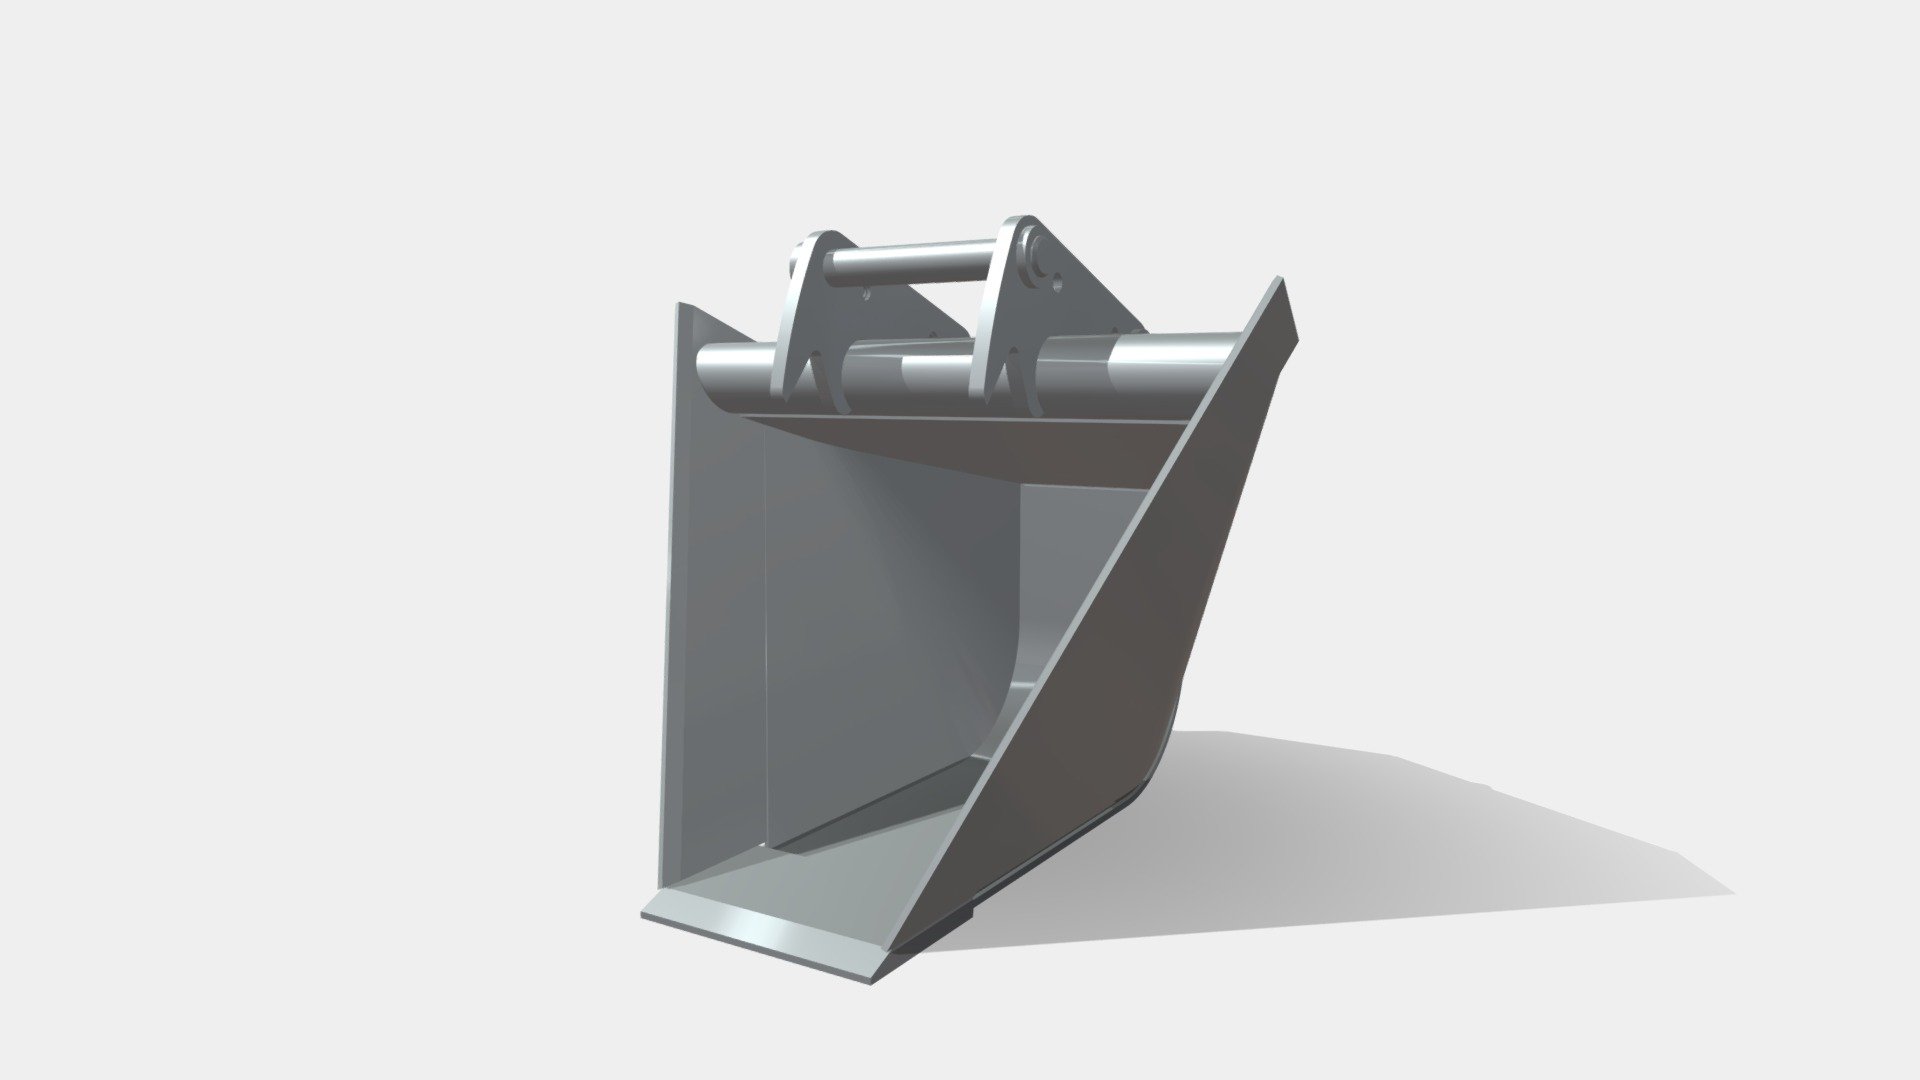 Pour excavatrices 7,2 - 32,5 T - Godet trapèze profil bombé MAGSI - 3D model by MAGSI 3d model